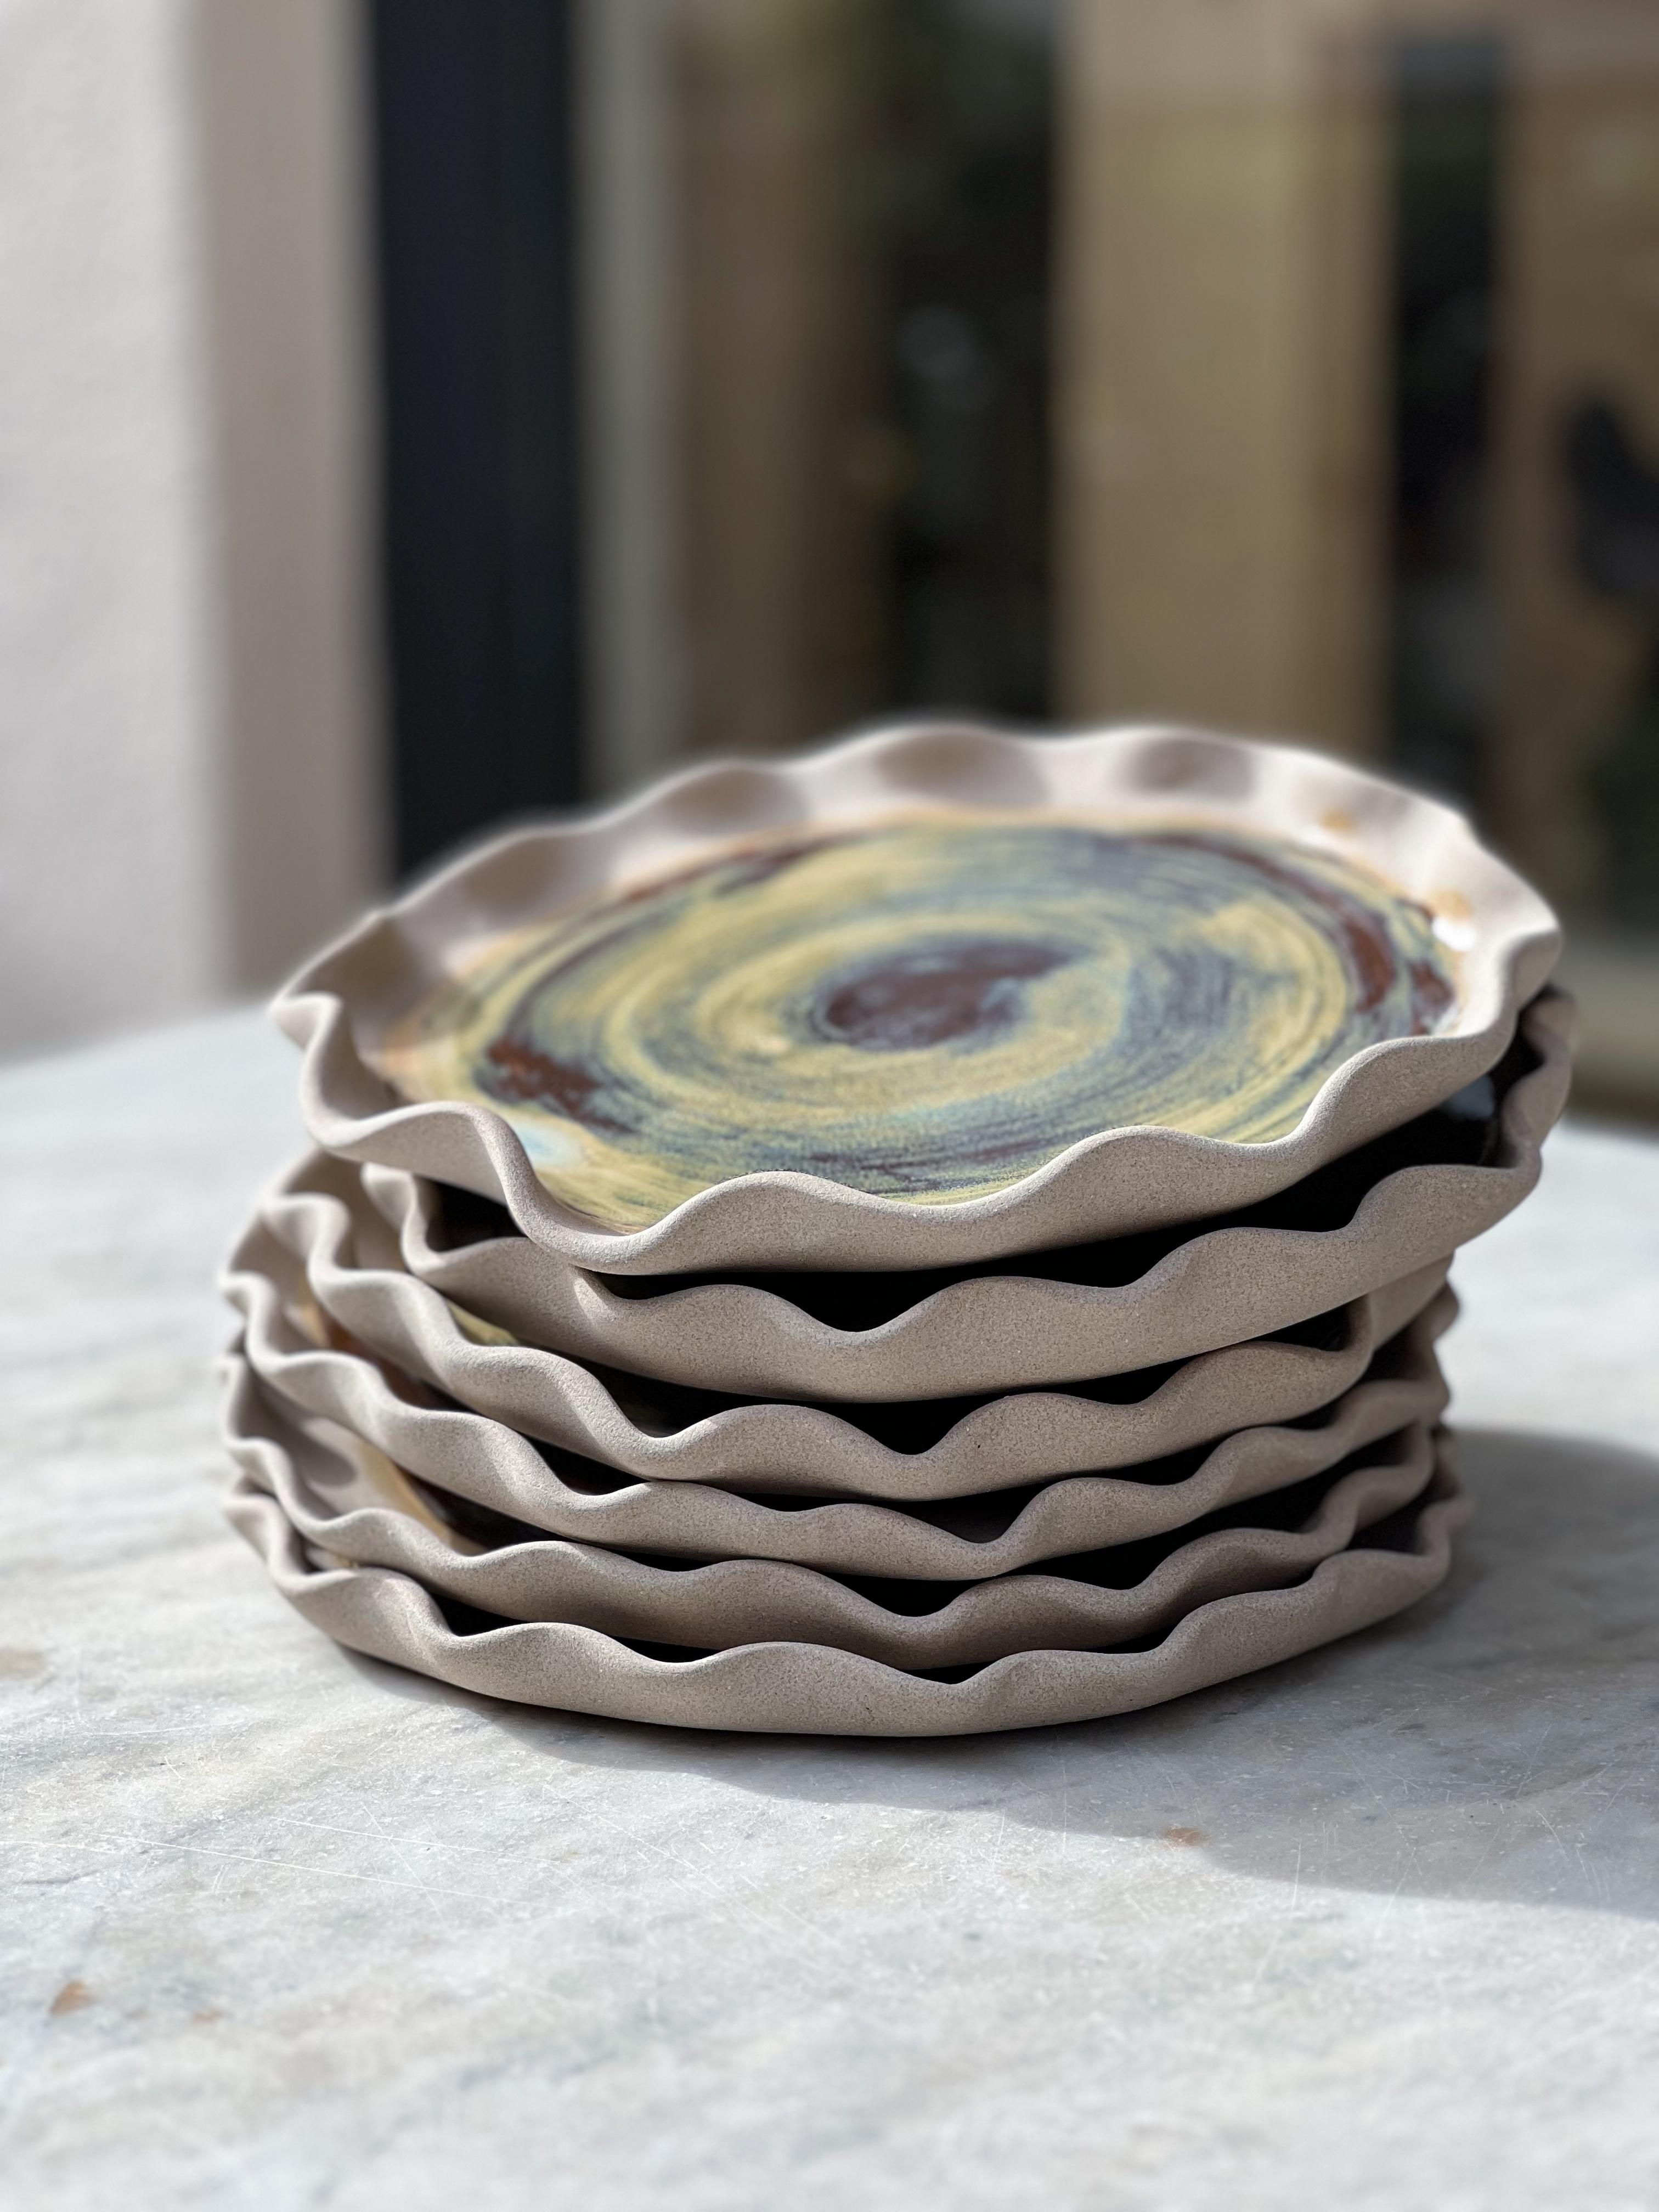 Ensemble de 6 assiettes Vagues de la mer Égée par Güler Elçi
Dimensions : D 20 x H 1,7 cm
Matériaux : Céramique en grès, glaçure alimentaire.

Güler Elçi est une artiste céramiste basée à Istanbul. À la lumière de sa carrière d'ingénieur, elle